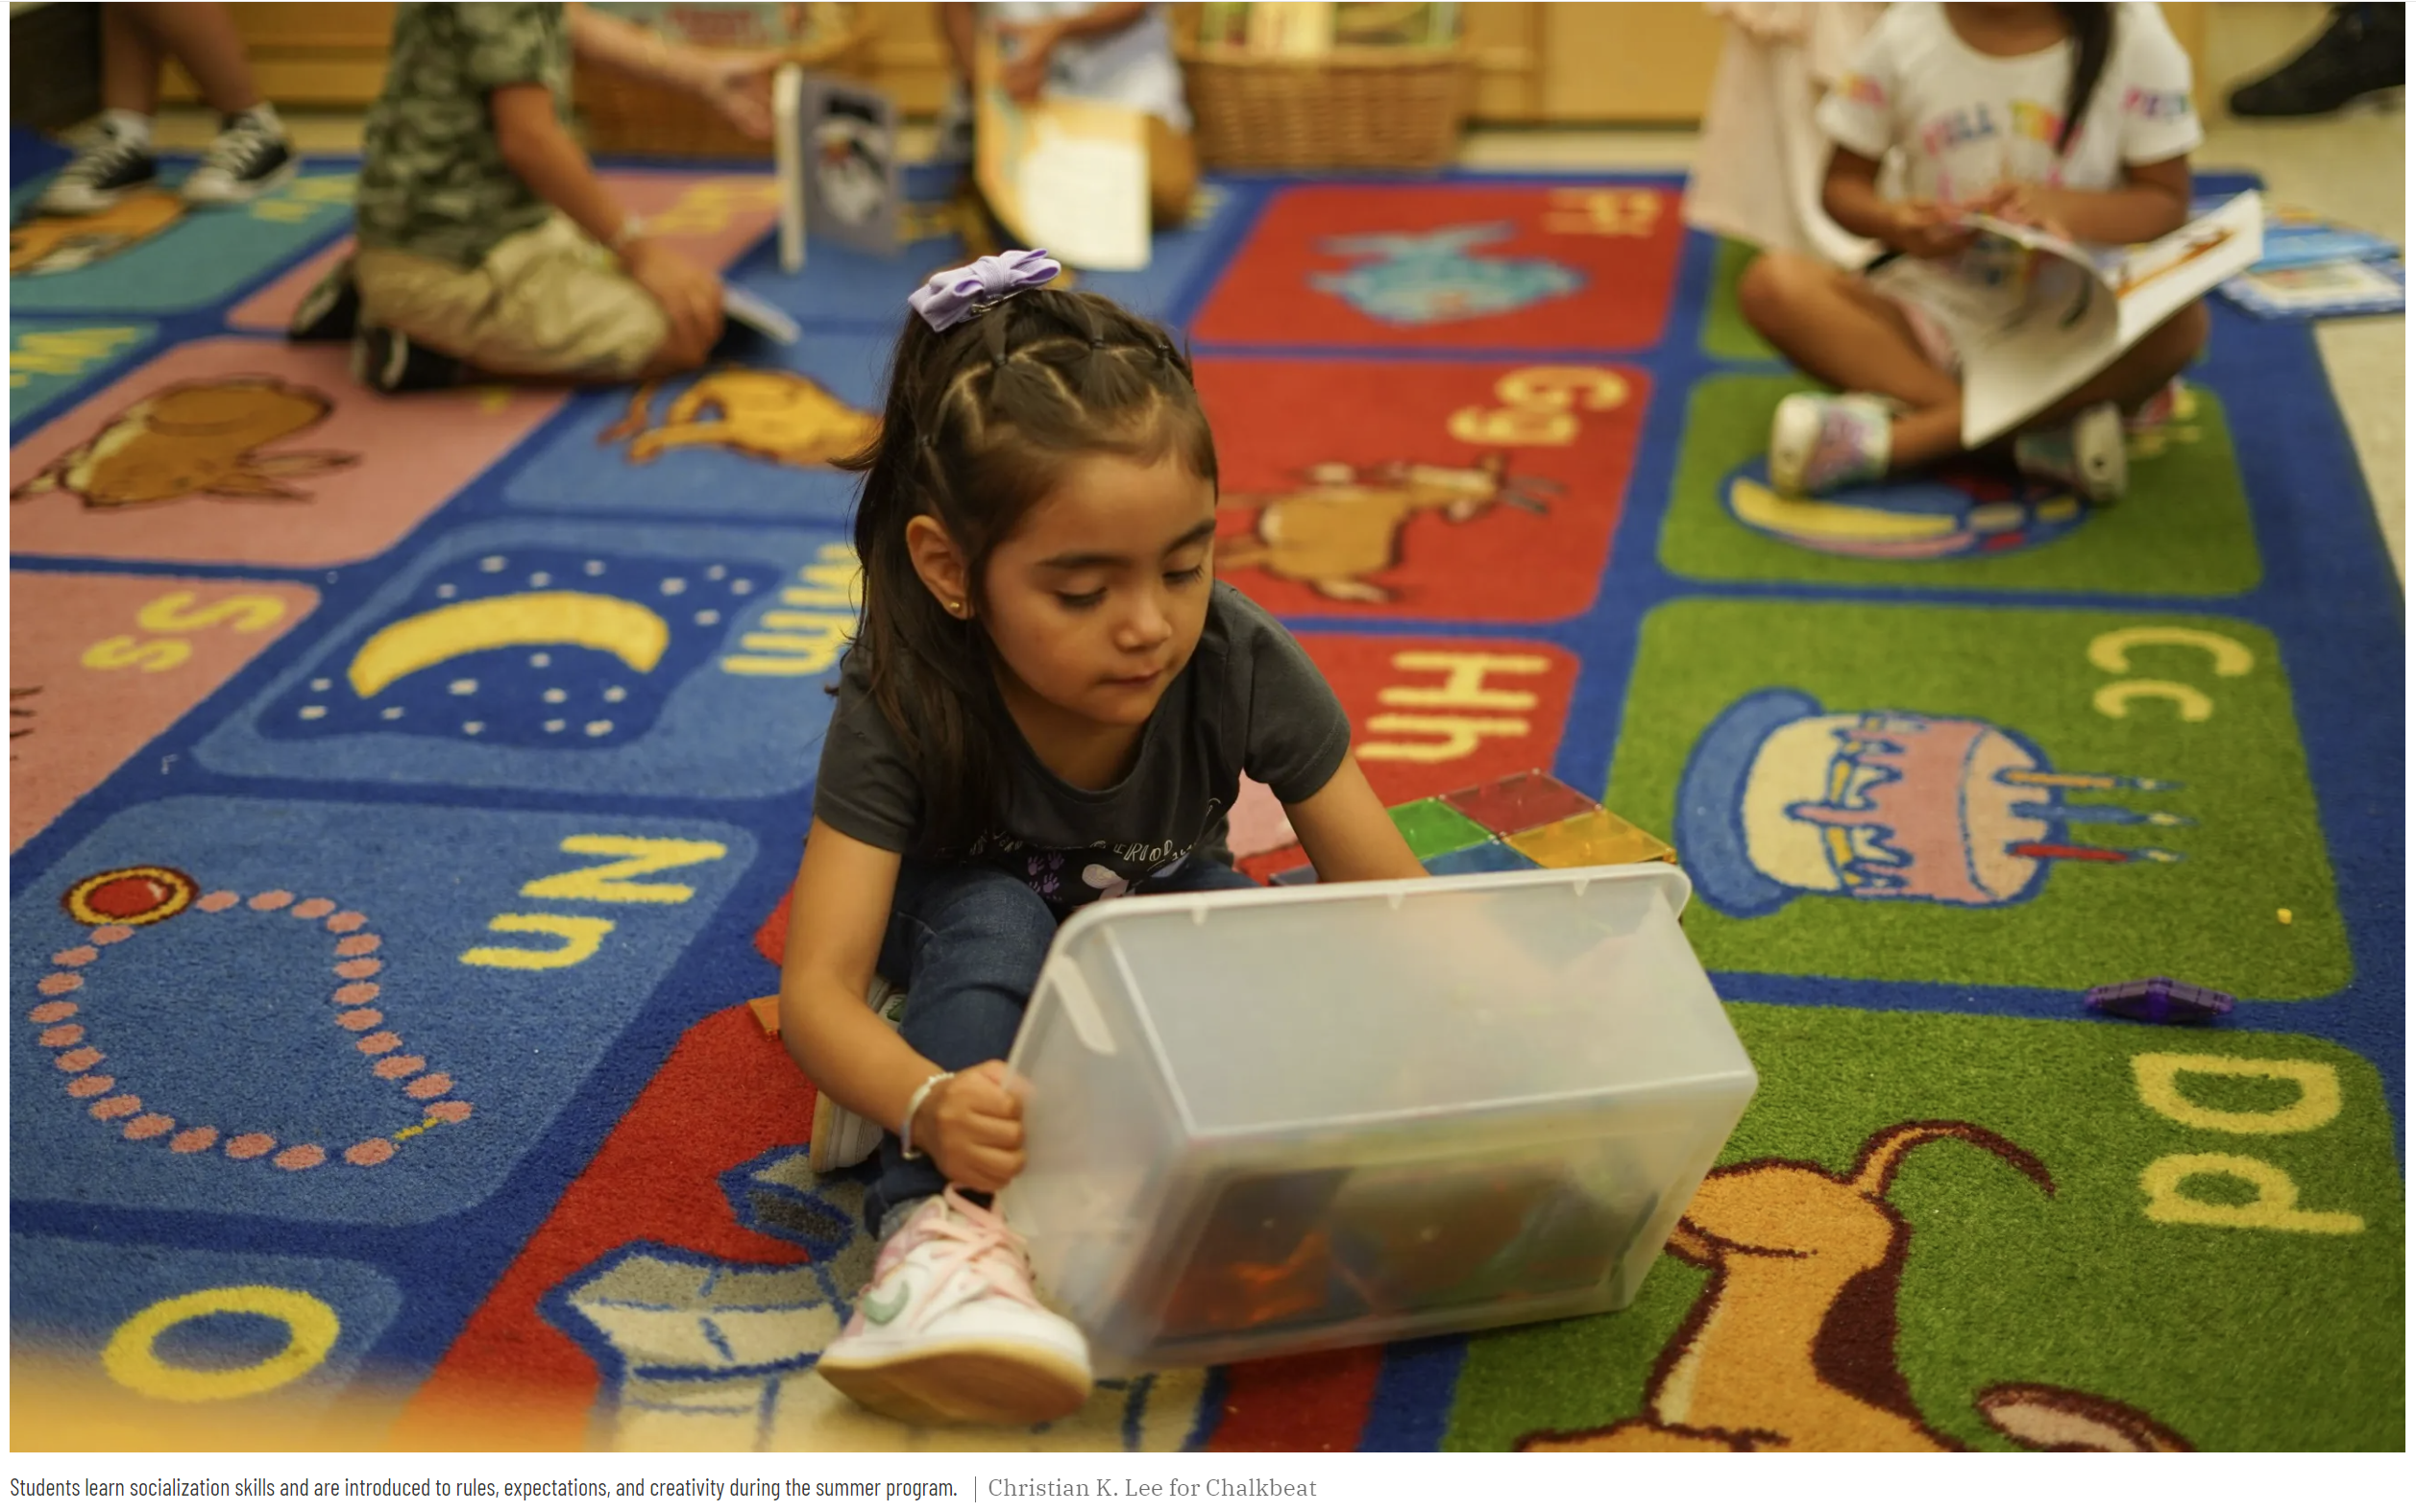 Una niña se sienta en una alfombra colorida en el preescolar y mira a través de un contenedor de plástico lleno de juguetes y otras herramientas de aprendizaje. Crédito de la foto: Chalkbeat